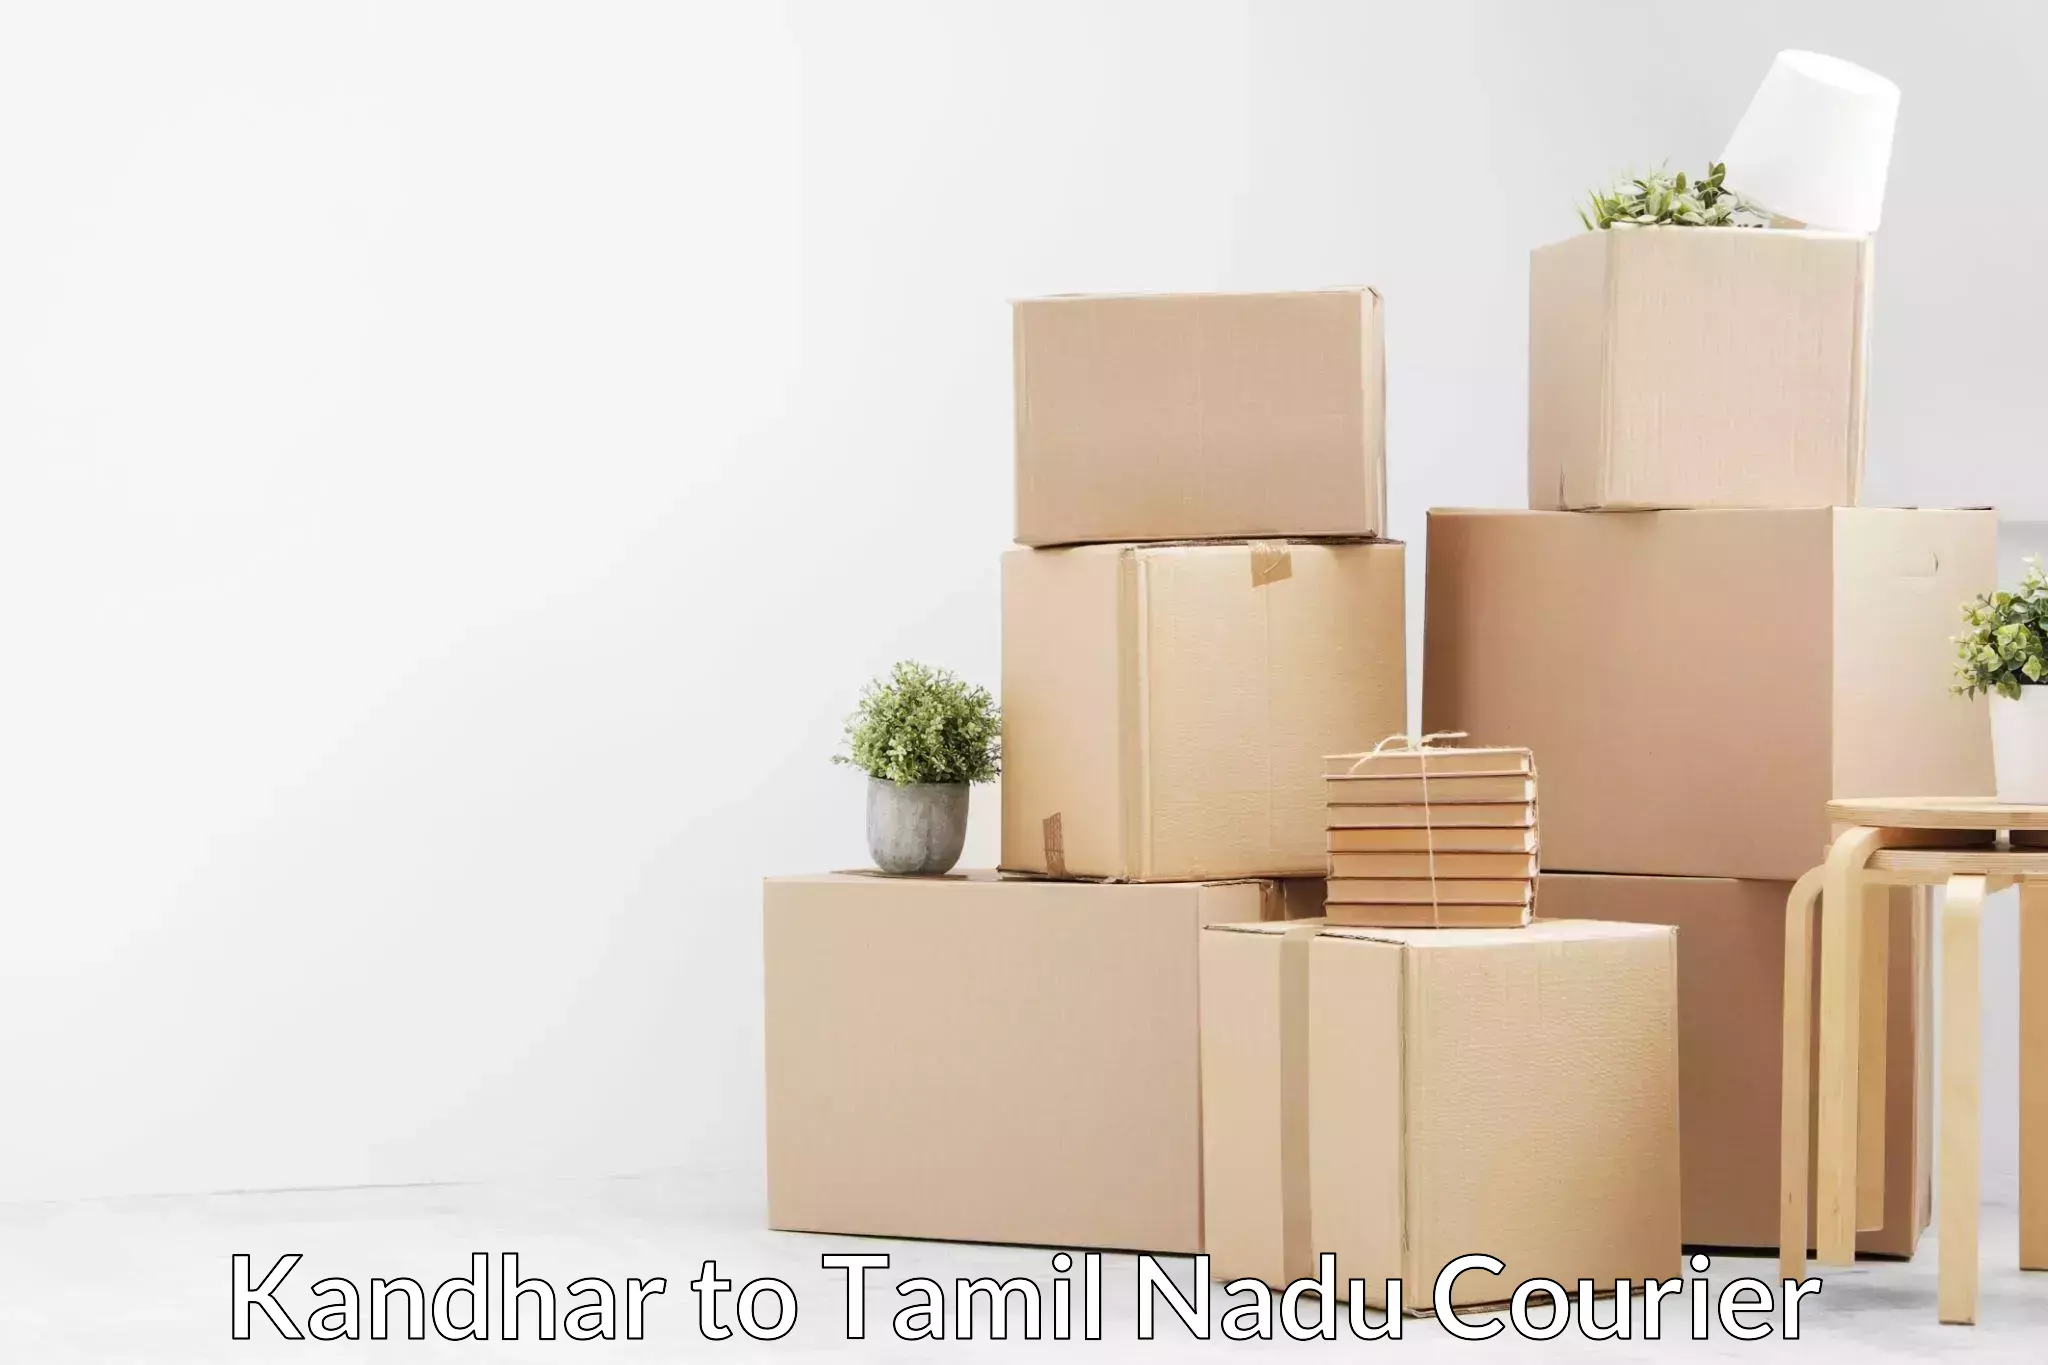 Furniture transport experts Kandhar to Kovilpatti